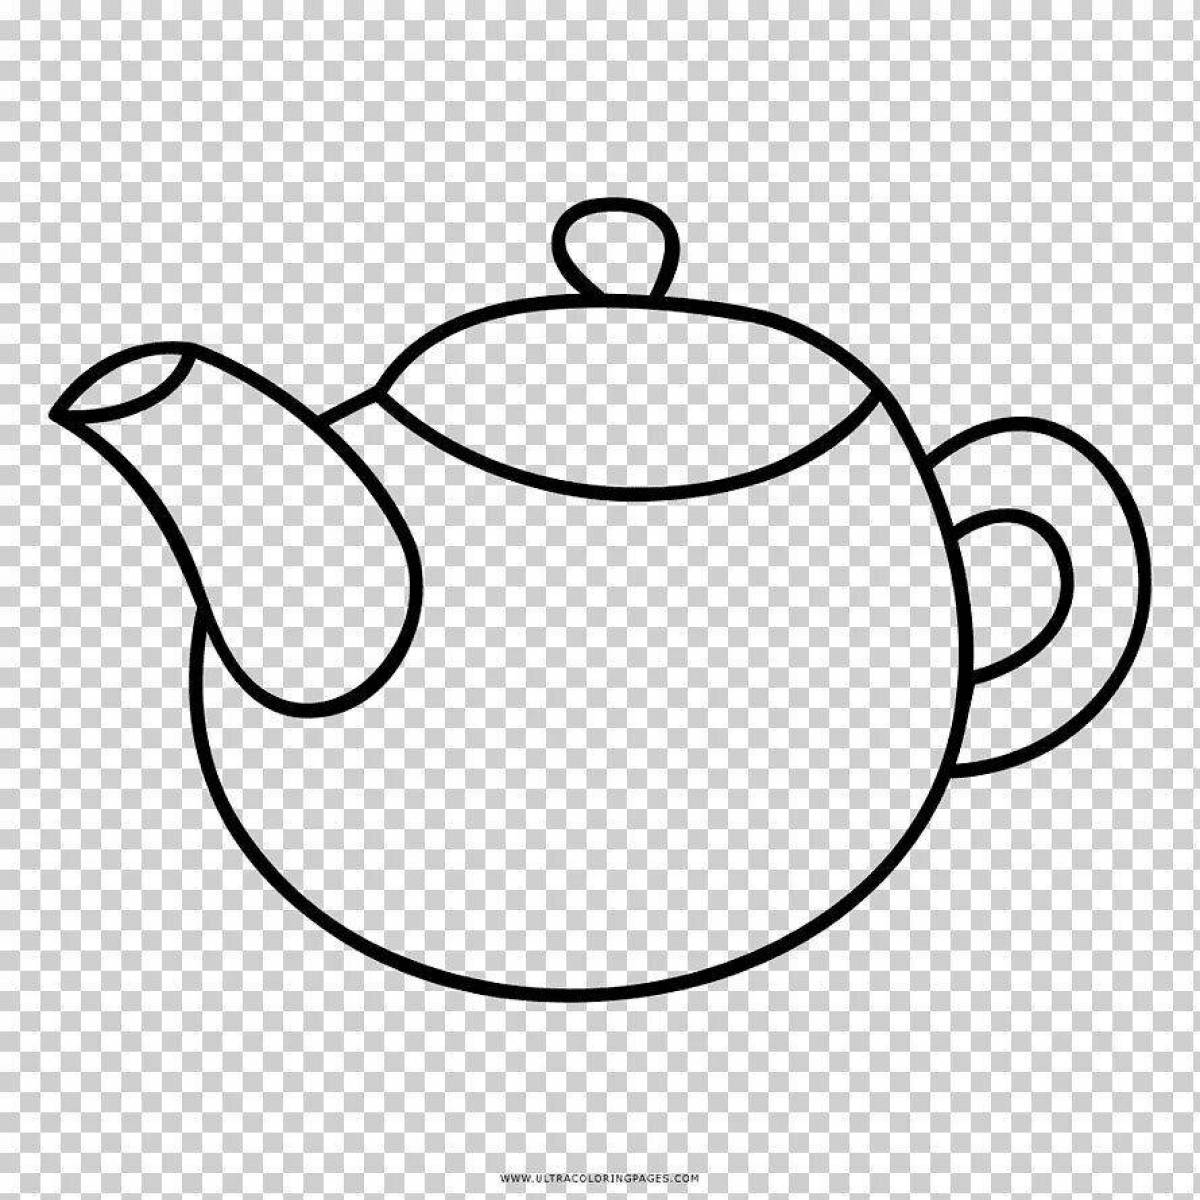 Unique teapot coloring